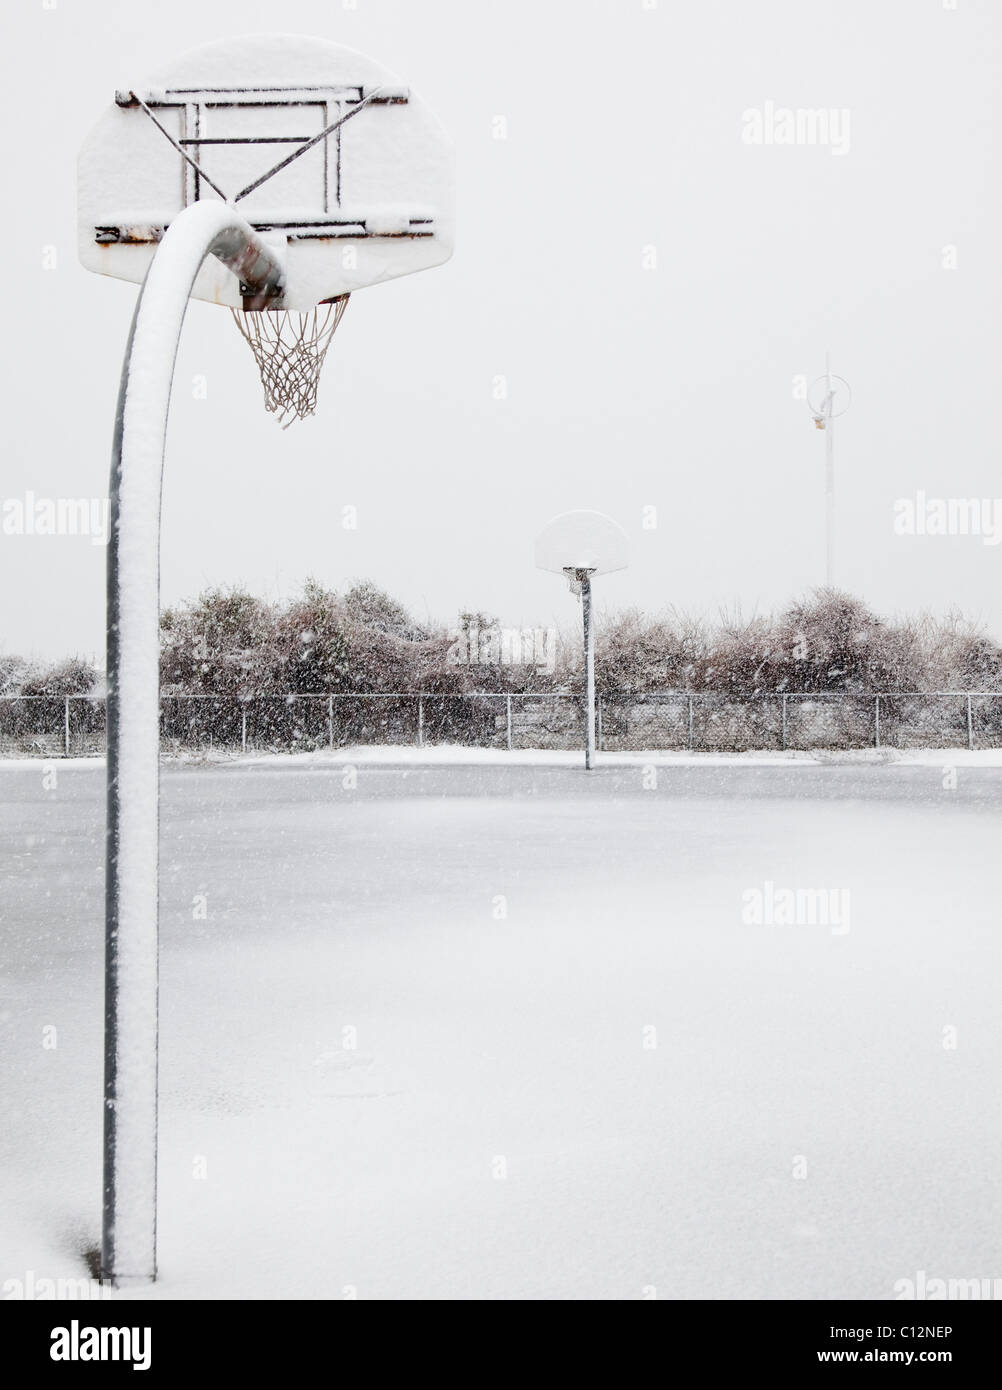 USA, New York State, Rockaway Beach, panier de basket-ball en hiver Banque D'Images